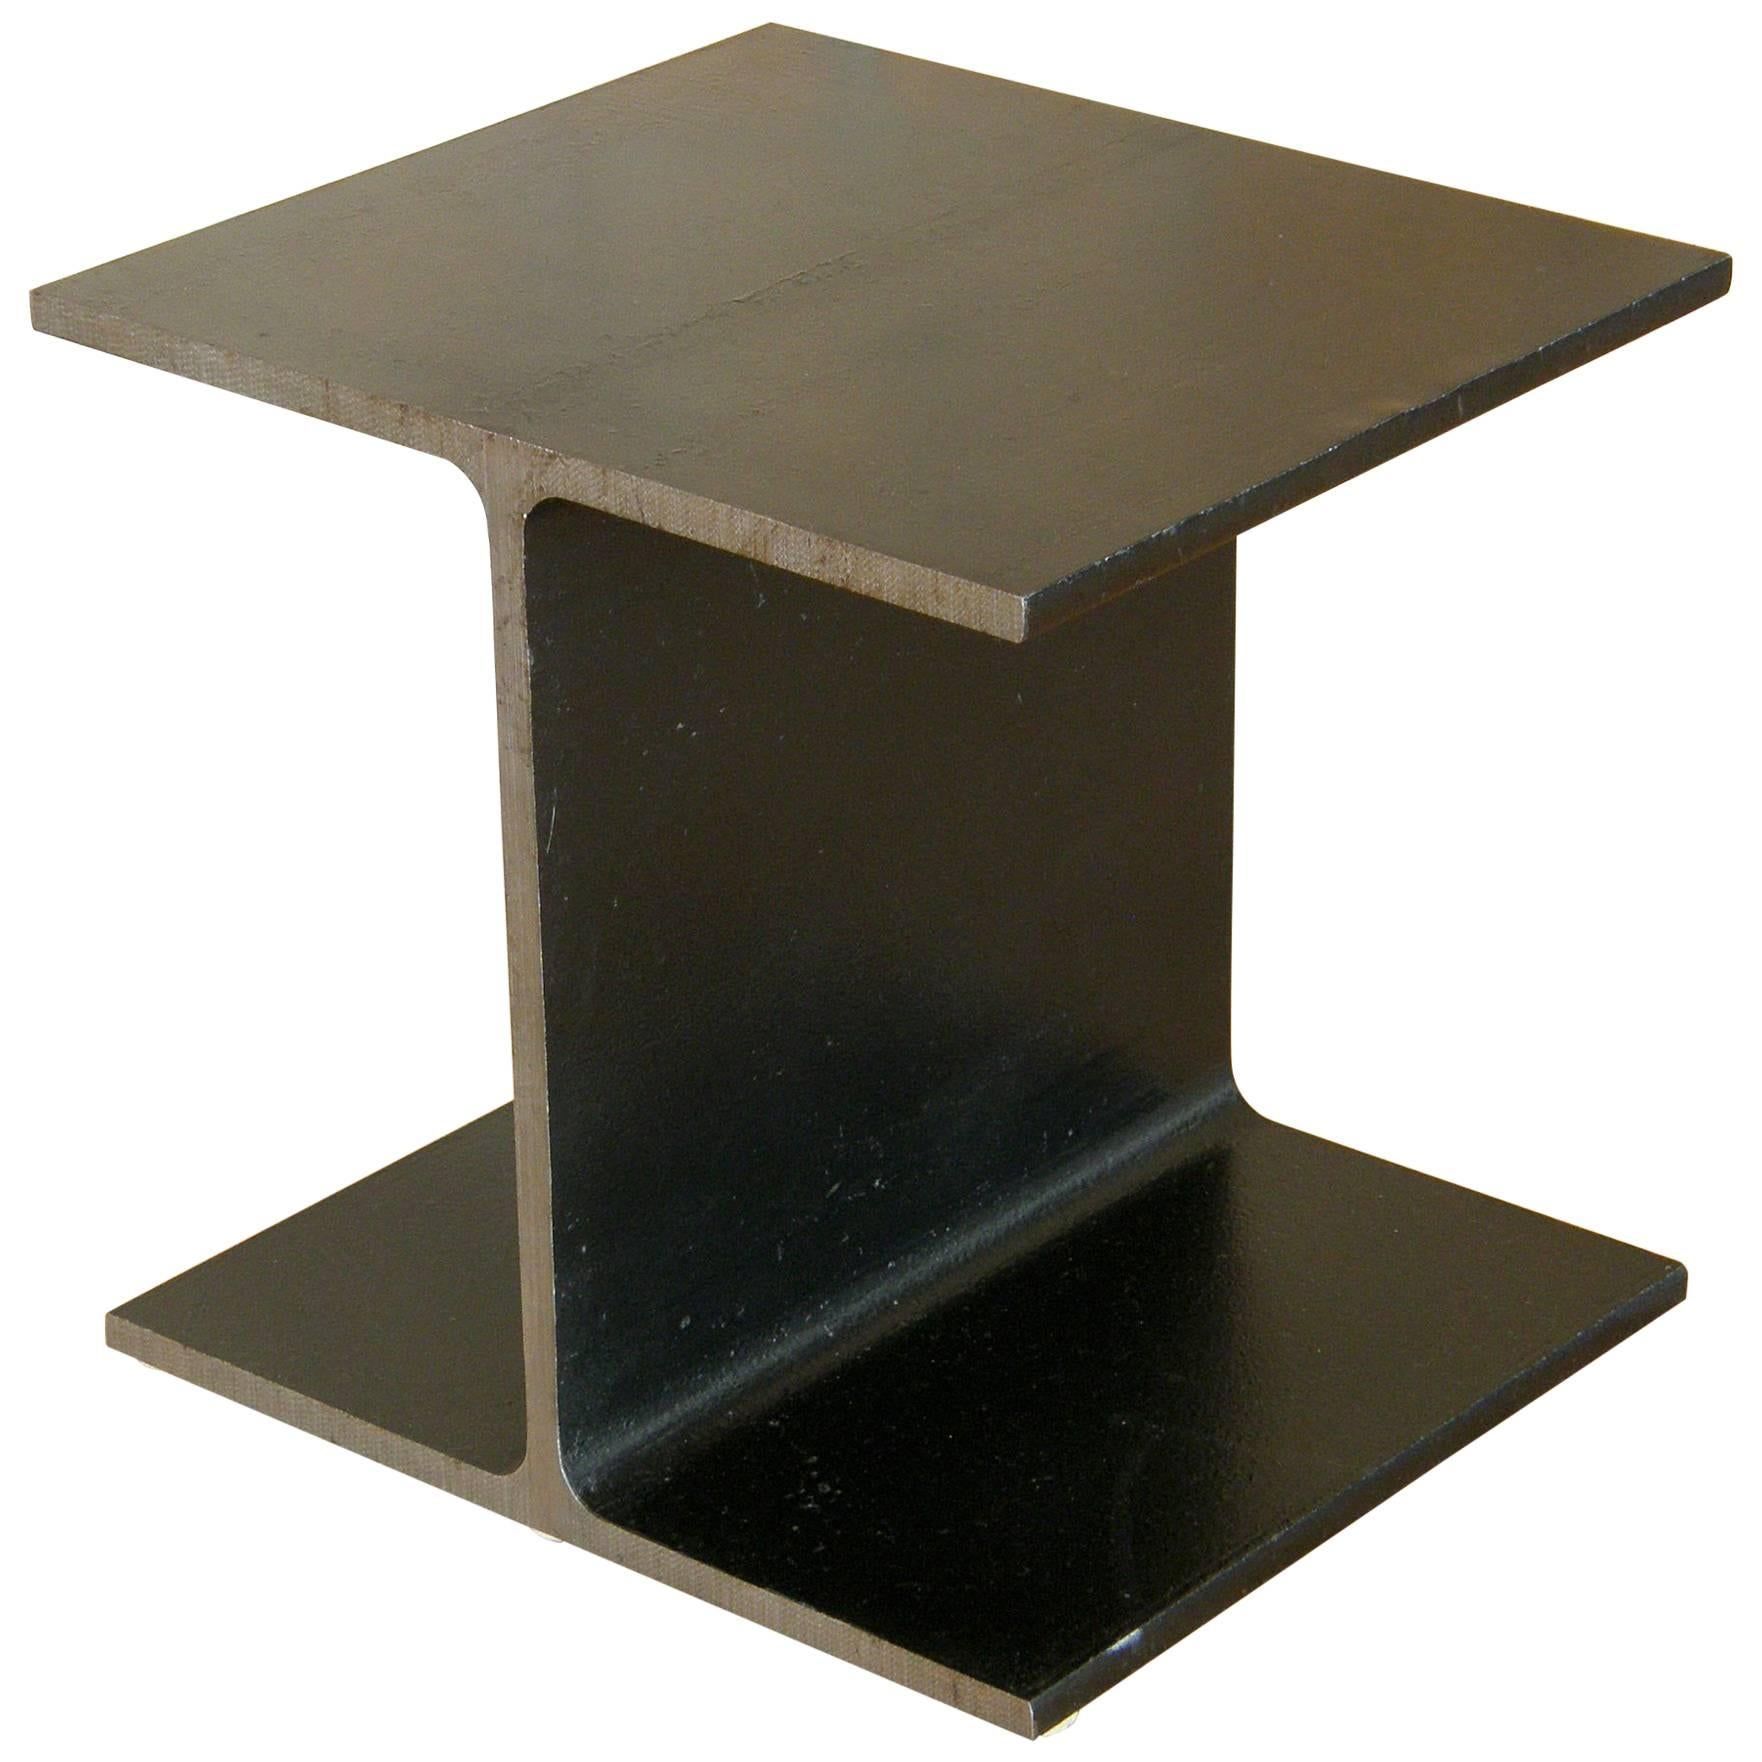 Steel Side Table Shaped like an I-Beam